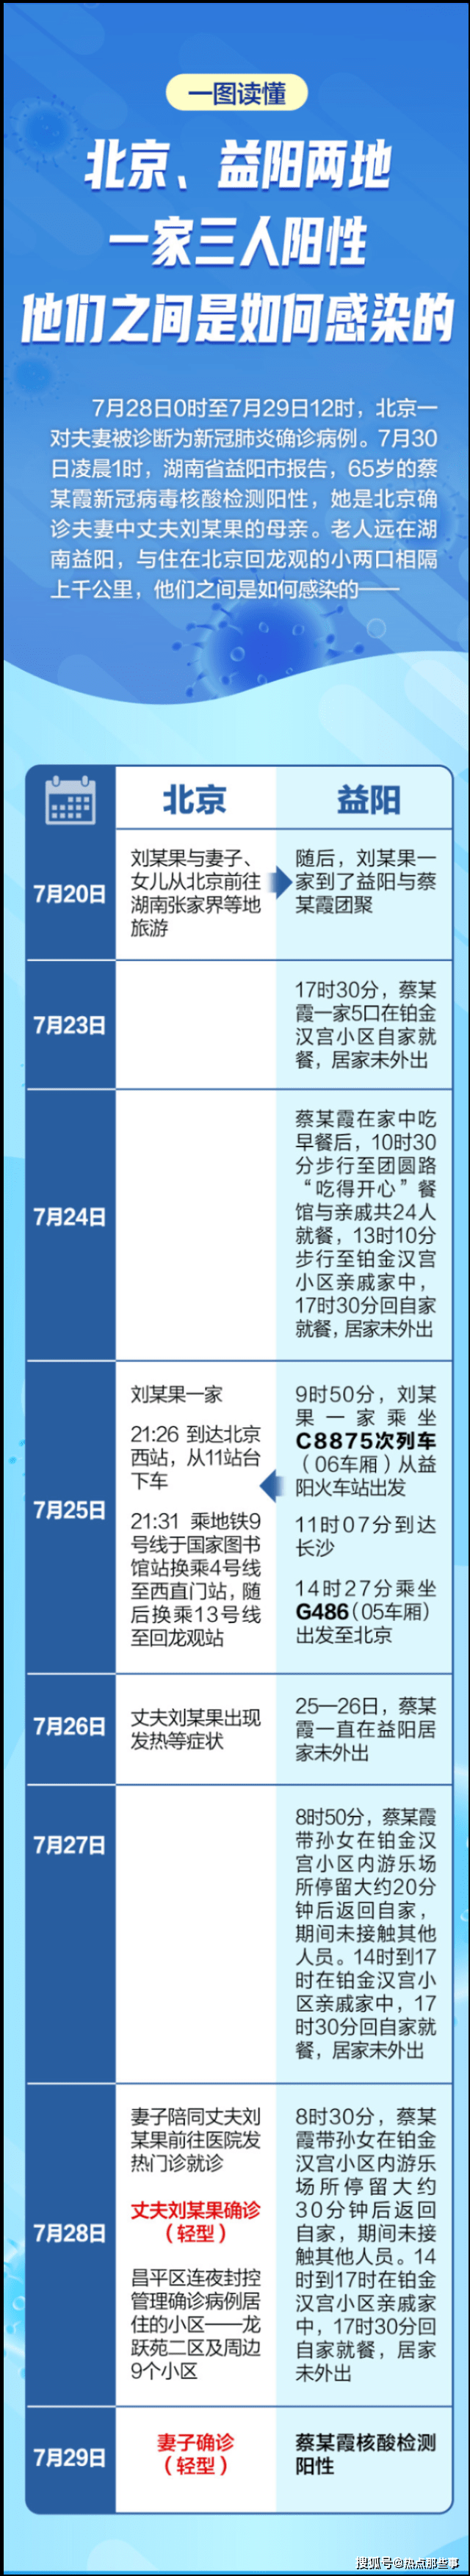 7月30日北京益阳疫情最新数据公布  北京益阳两地一家三人如何感染的详情公布